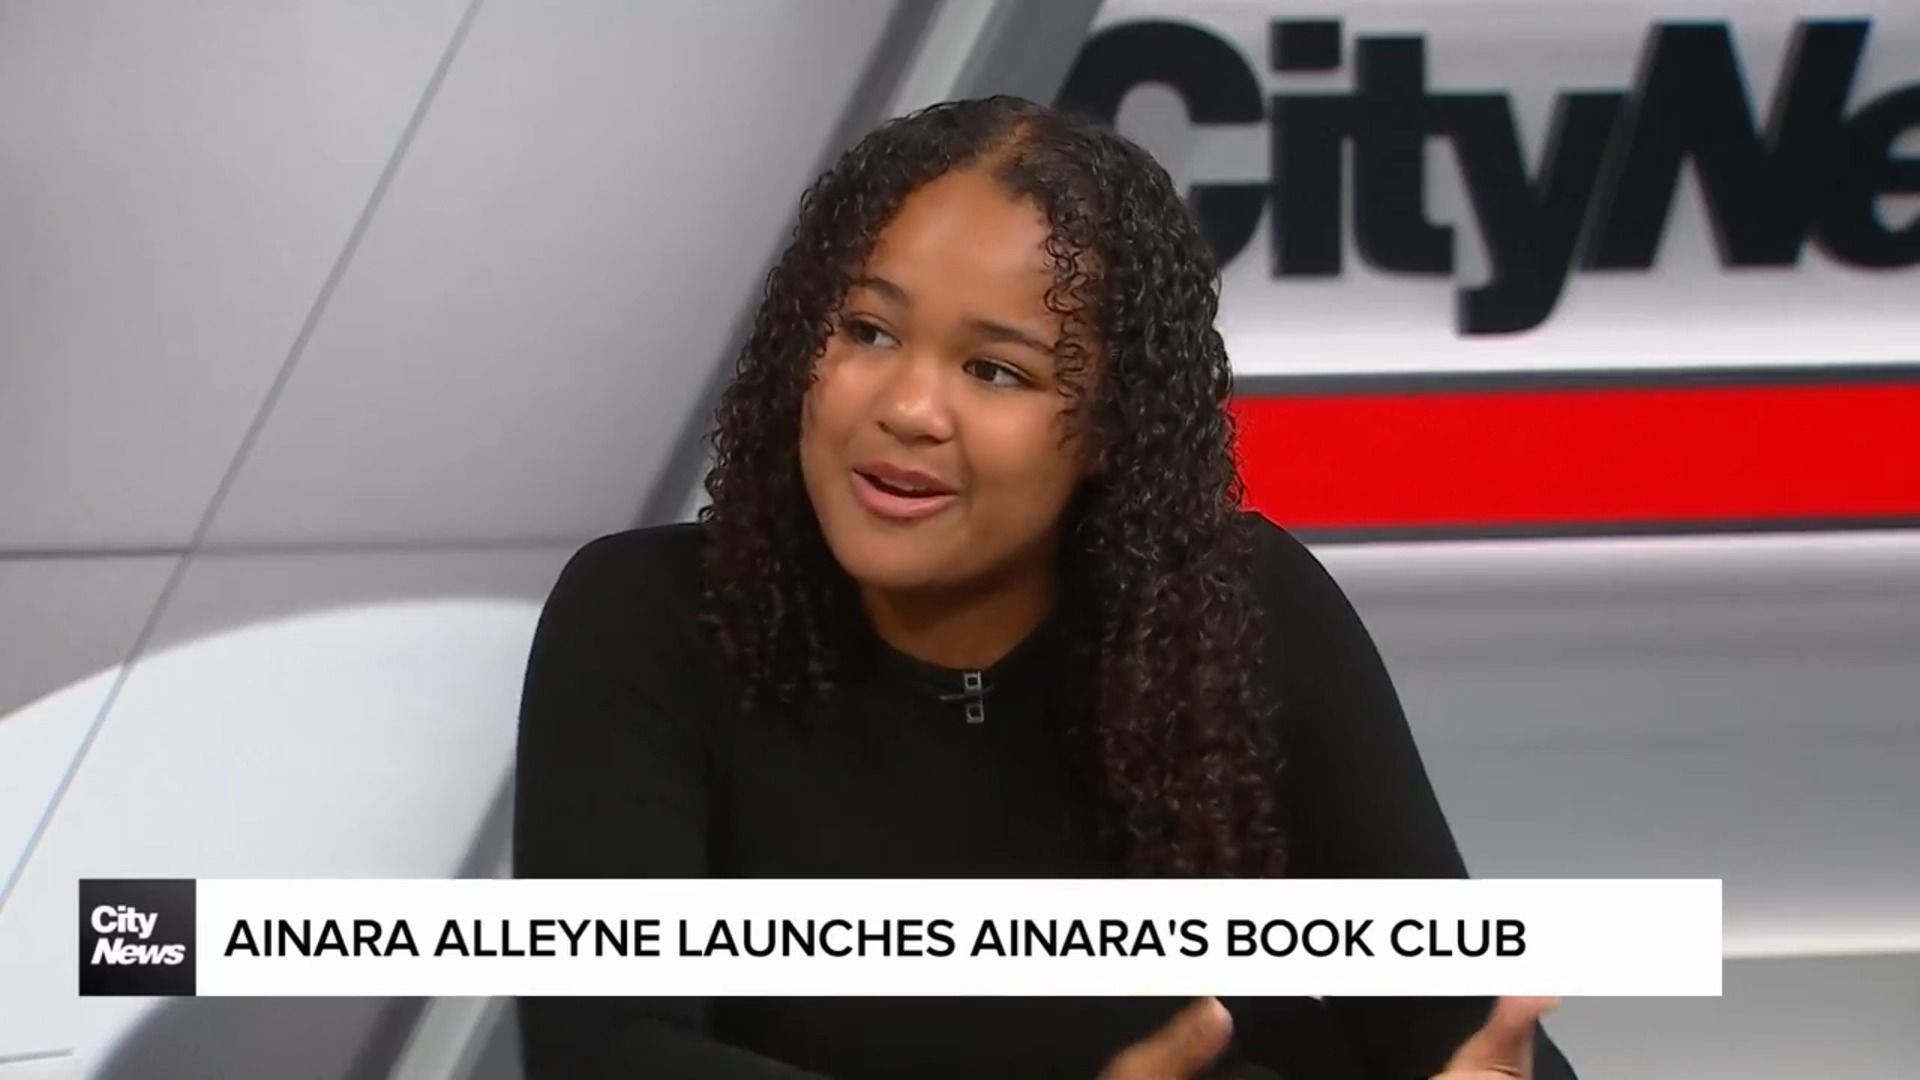 Ainara Alleyne launches book club for kids